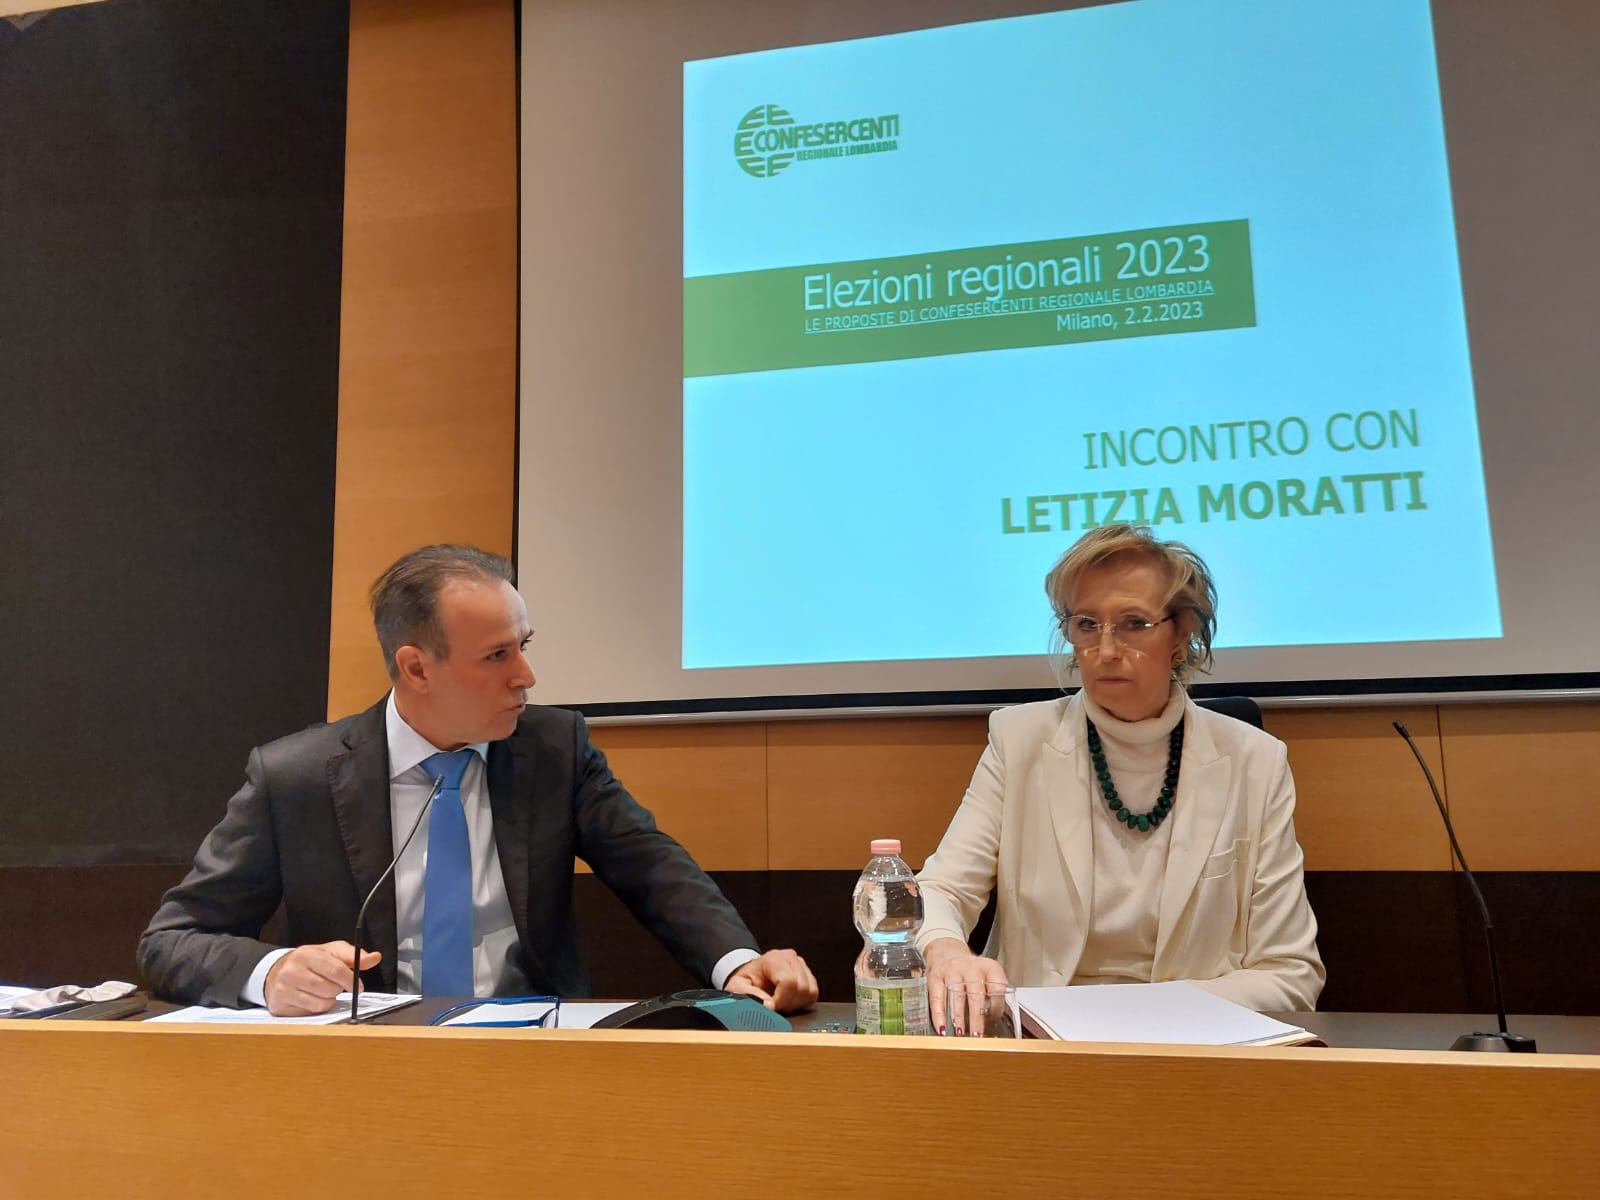 Elezioni regionali 2023: Confesercenti Lombardia incontra Letizia Moratti